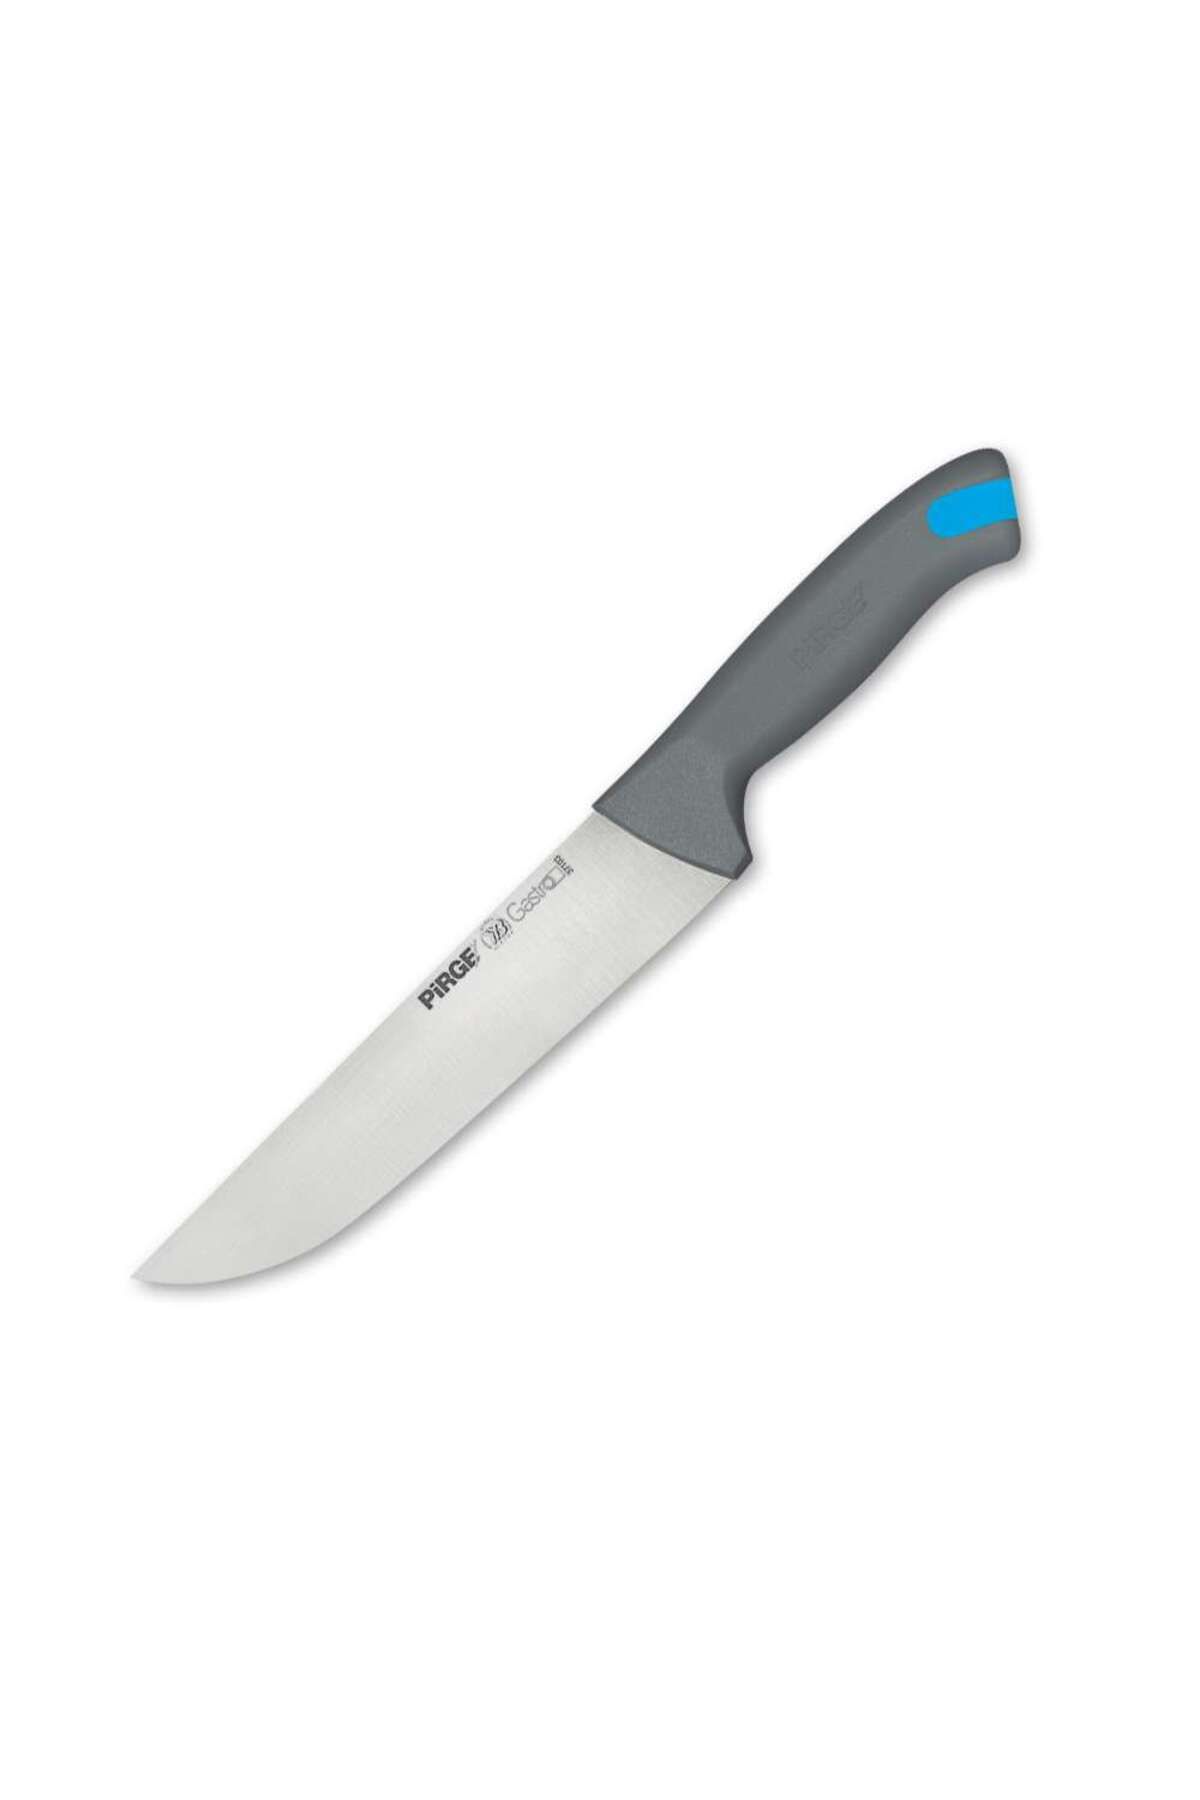 Pirge Gastro Kasap Bıçağı No.3 19 cm GRİ - 37103